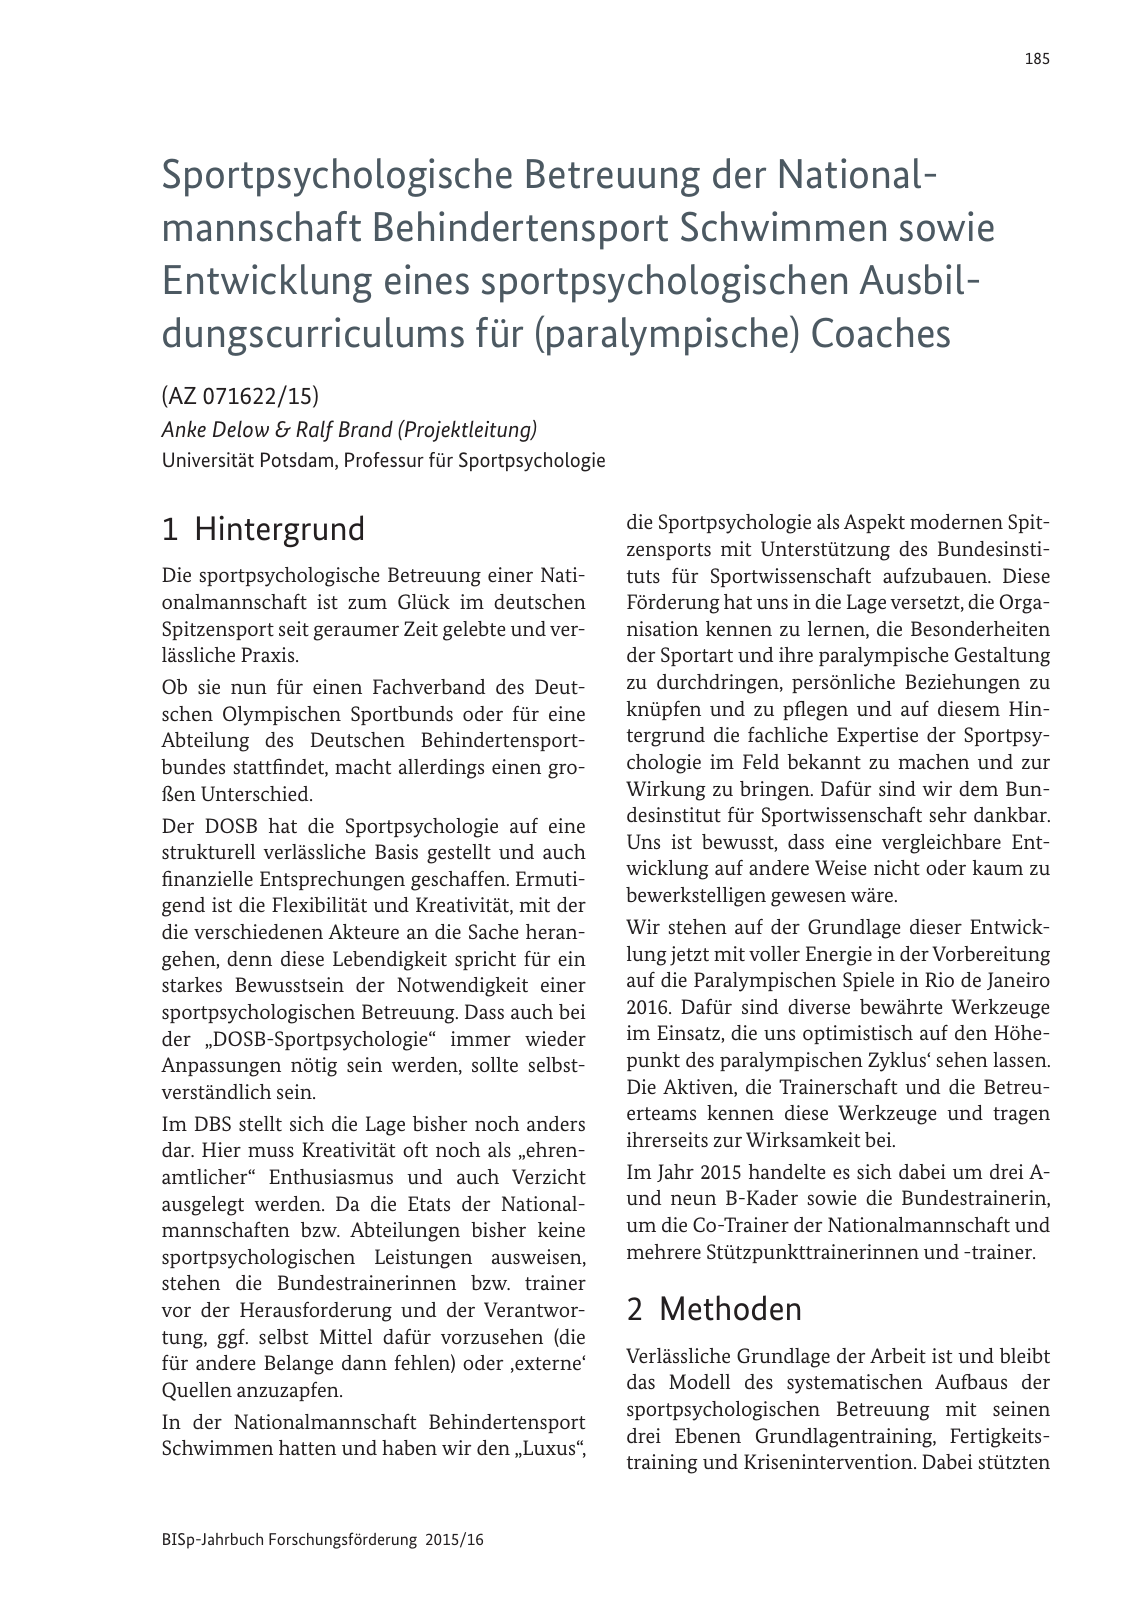 Vorschau BISp-Jahrbuch Forschungsförderung 2015/16 Seite 187